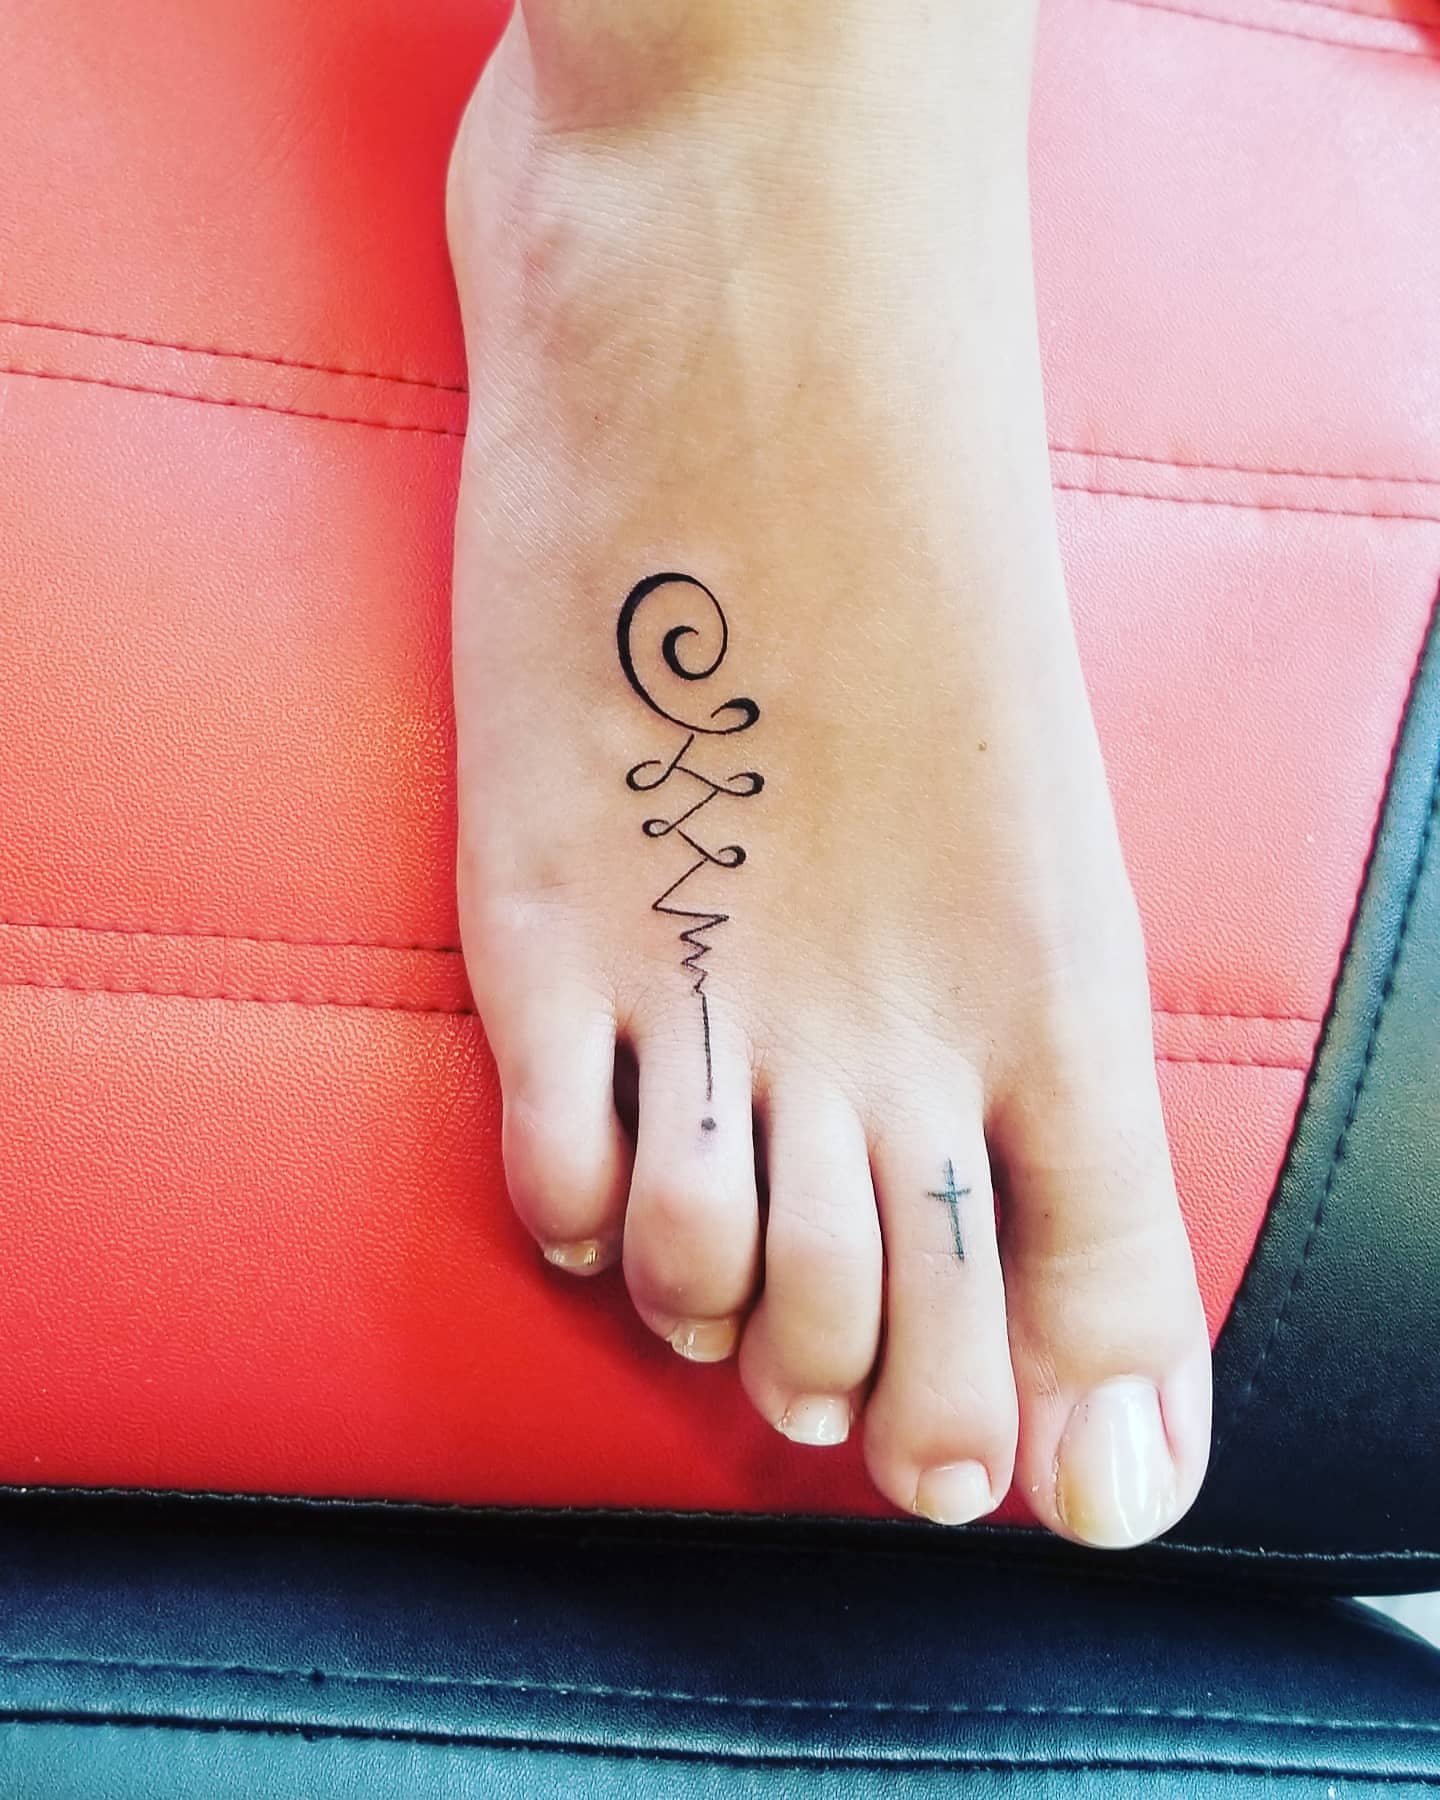 Tatuaje Unalome en el pie.